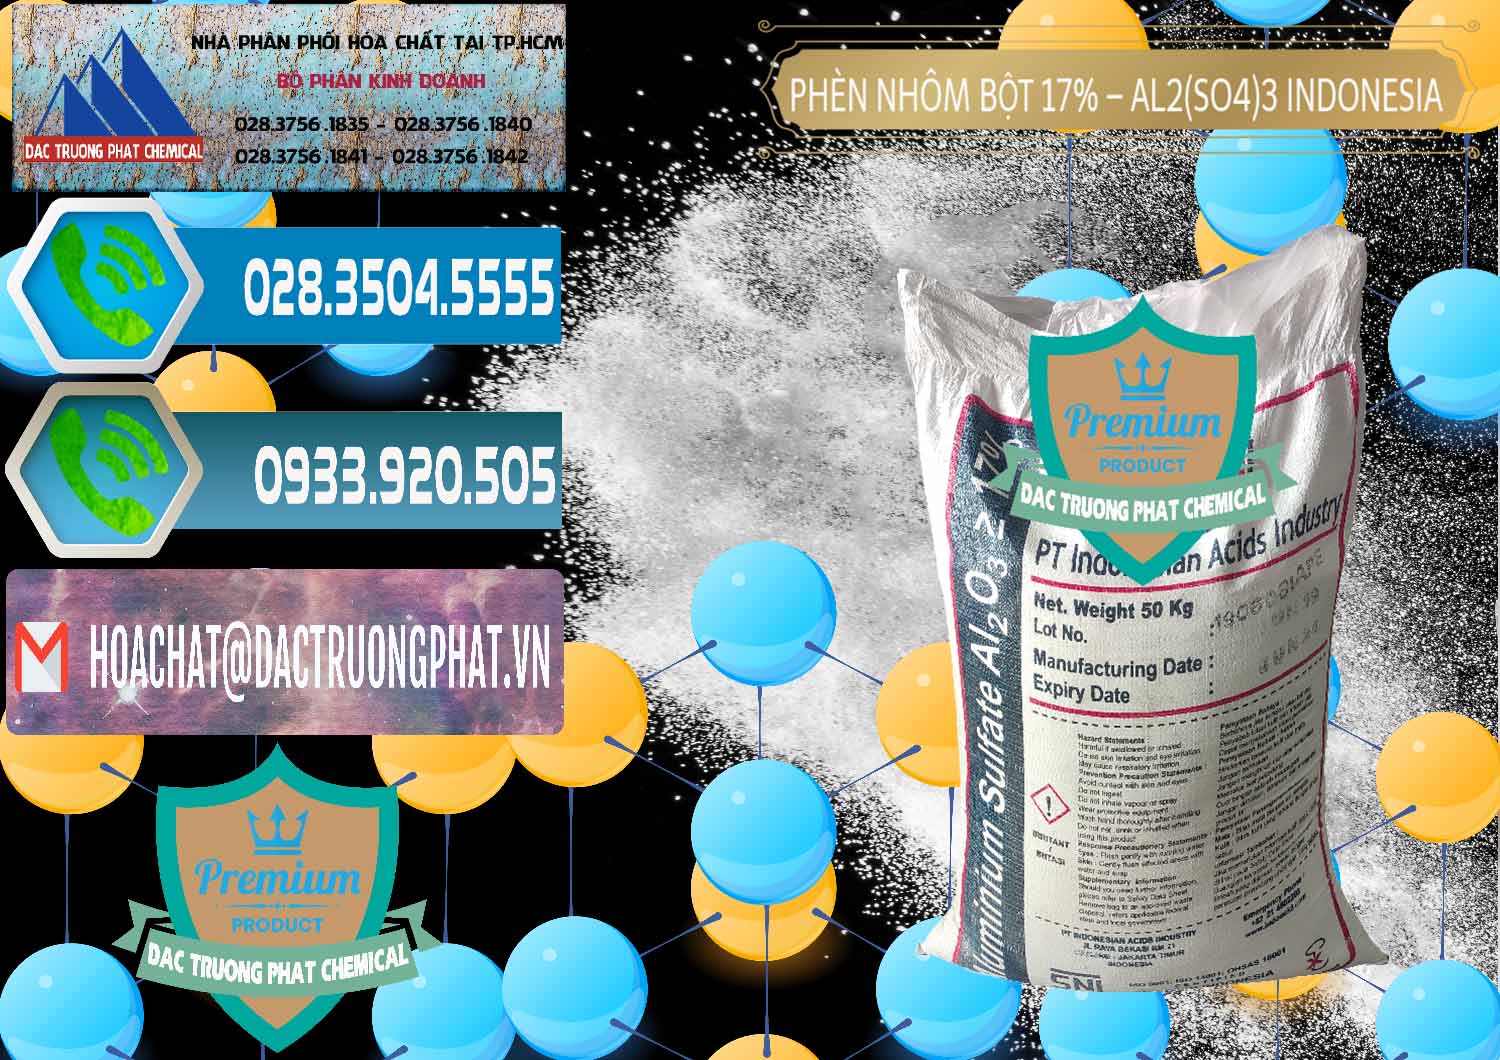 Chuyên bán & phân phối Phèn Nhôm Bột - Al2(SO4)3 17% bao 50kg Indonesia - 0112 - Cty chuyên cung cấp - kinh doanh hóa chất tại TP.HCM - congtyhoachat.net